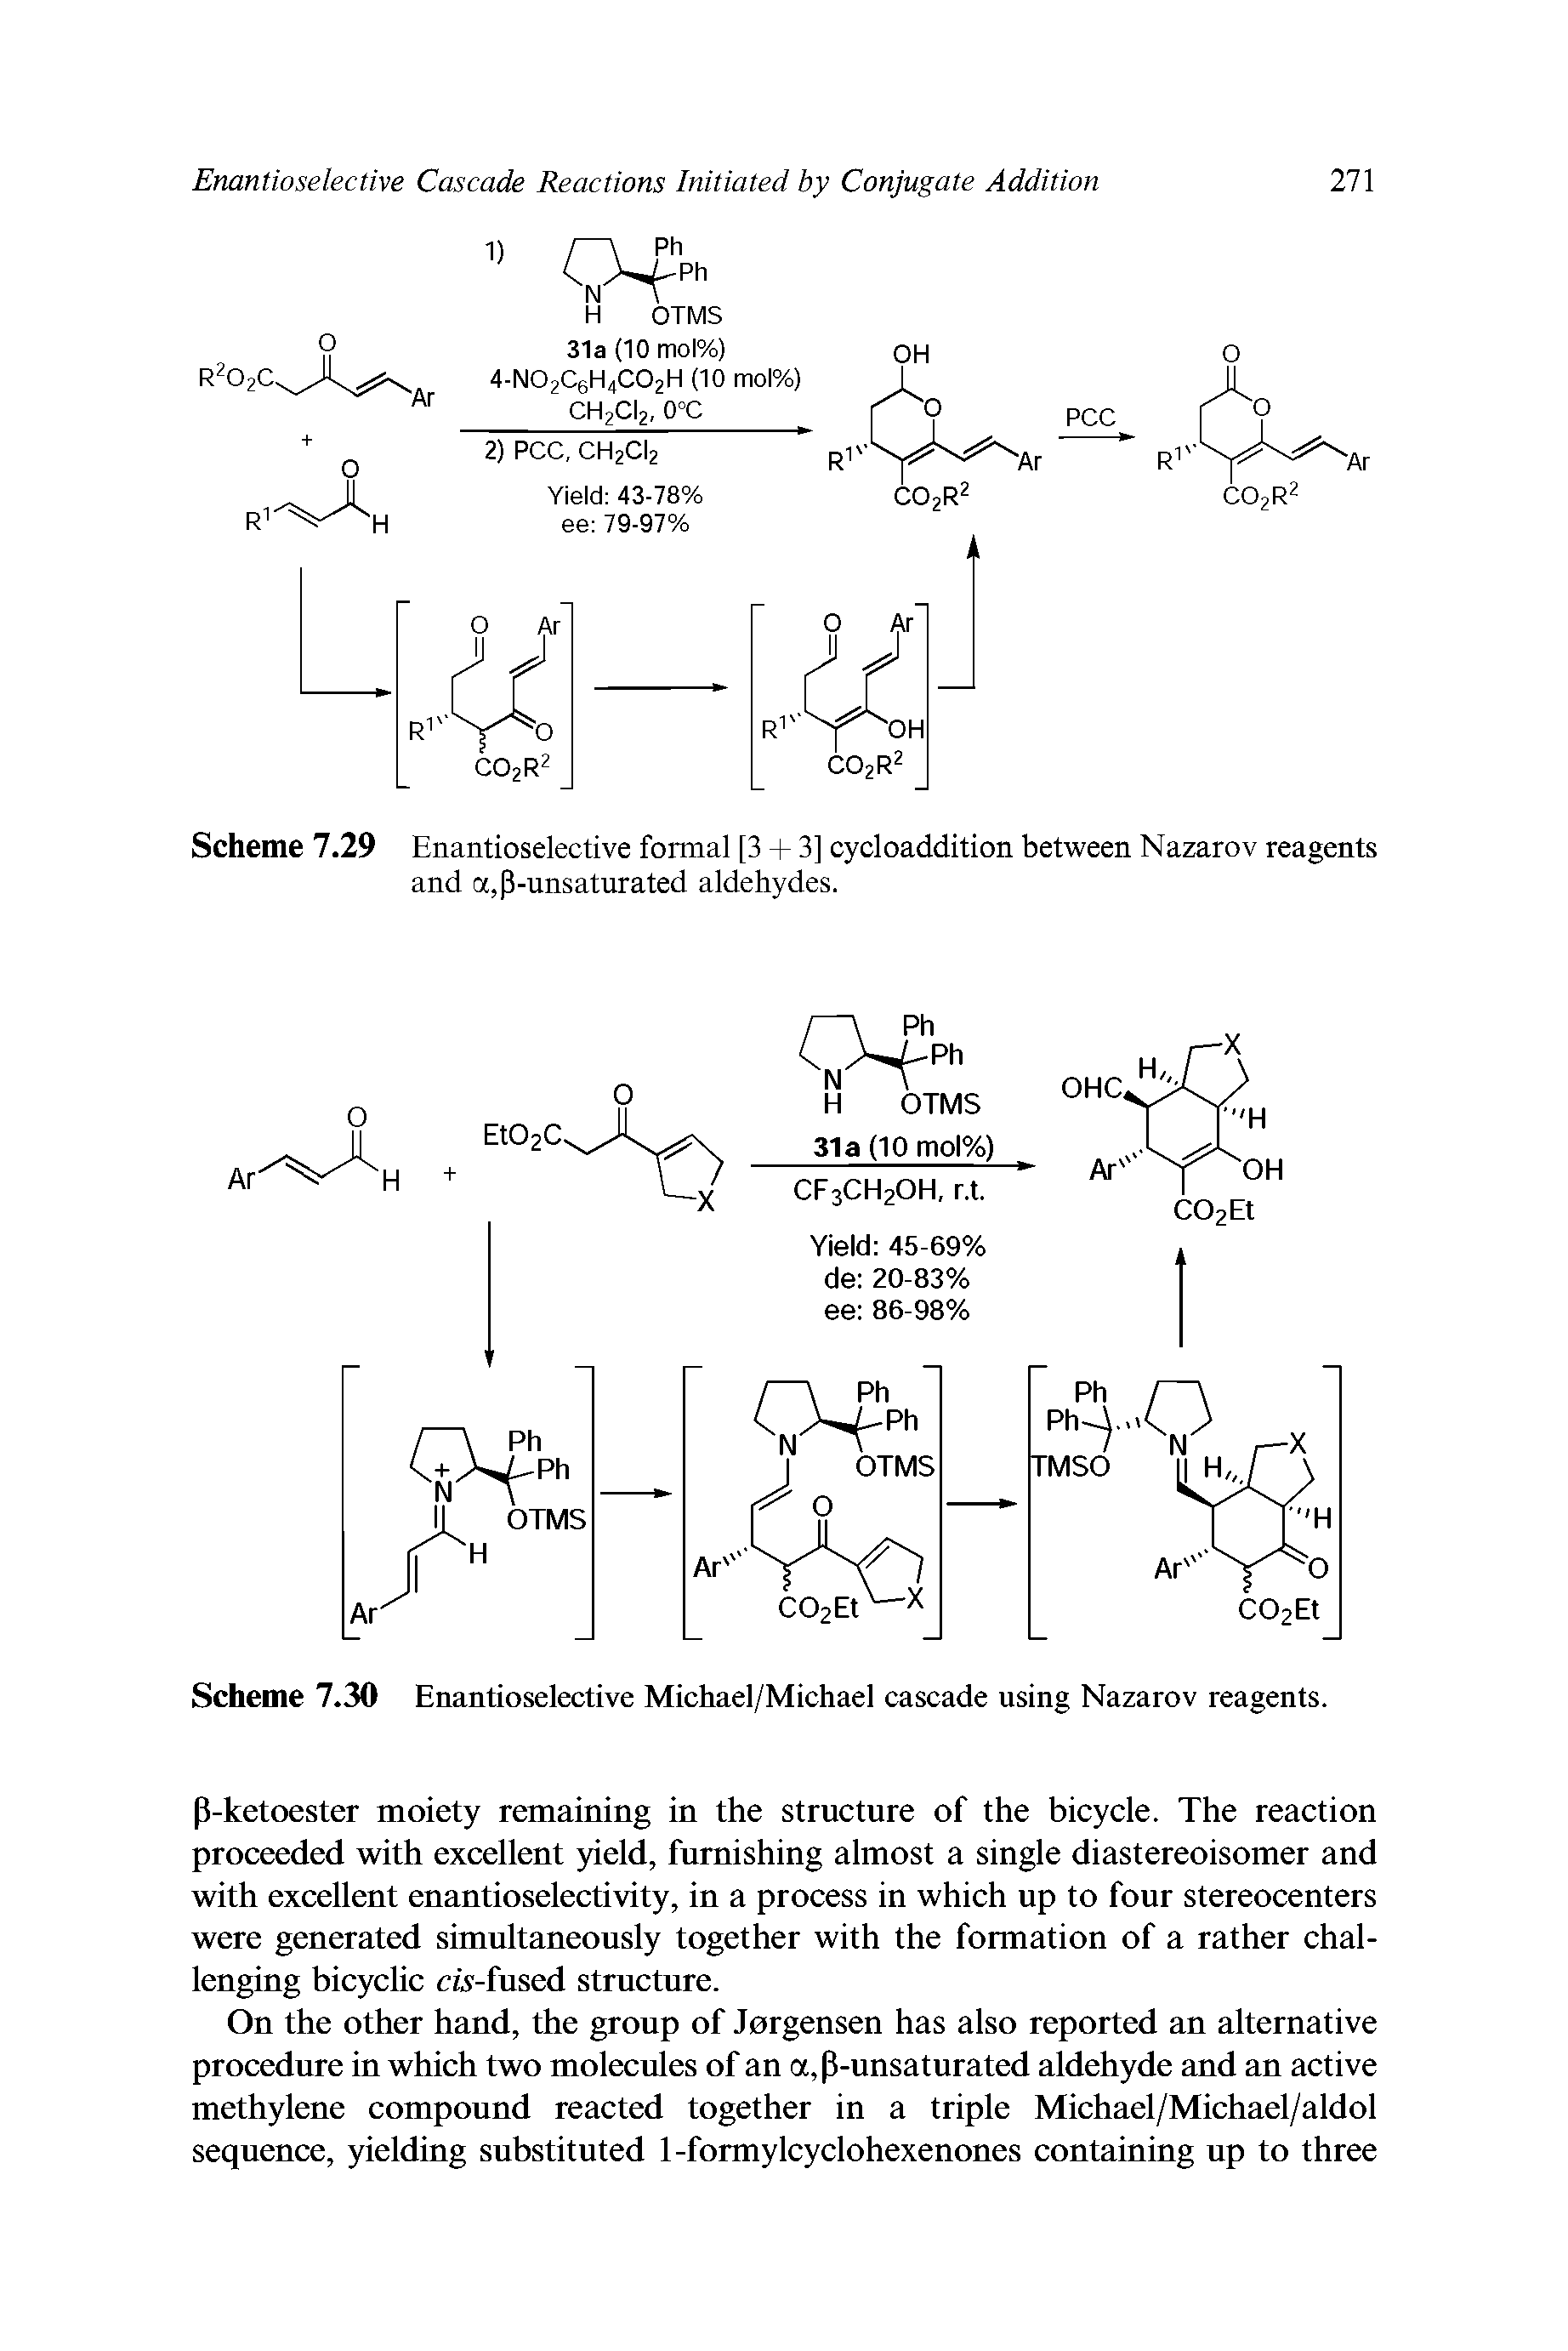 Scheme 7.30 Enantioselective Michael/Michael cascade using Nazarov reagents.